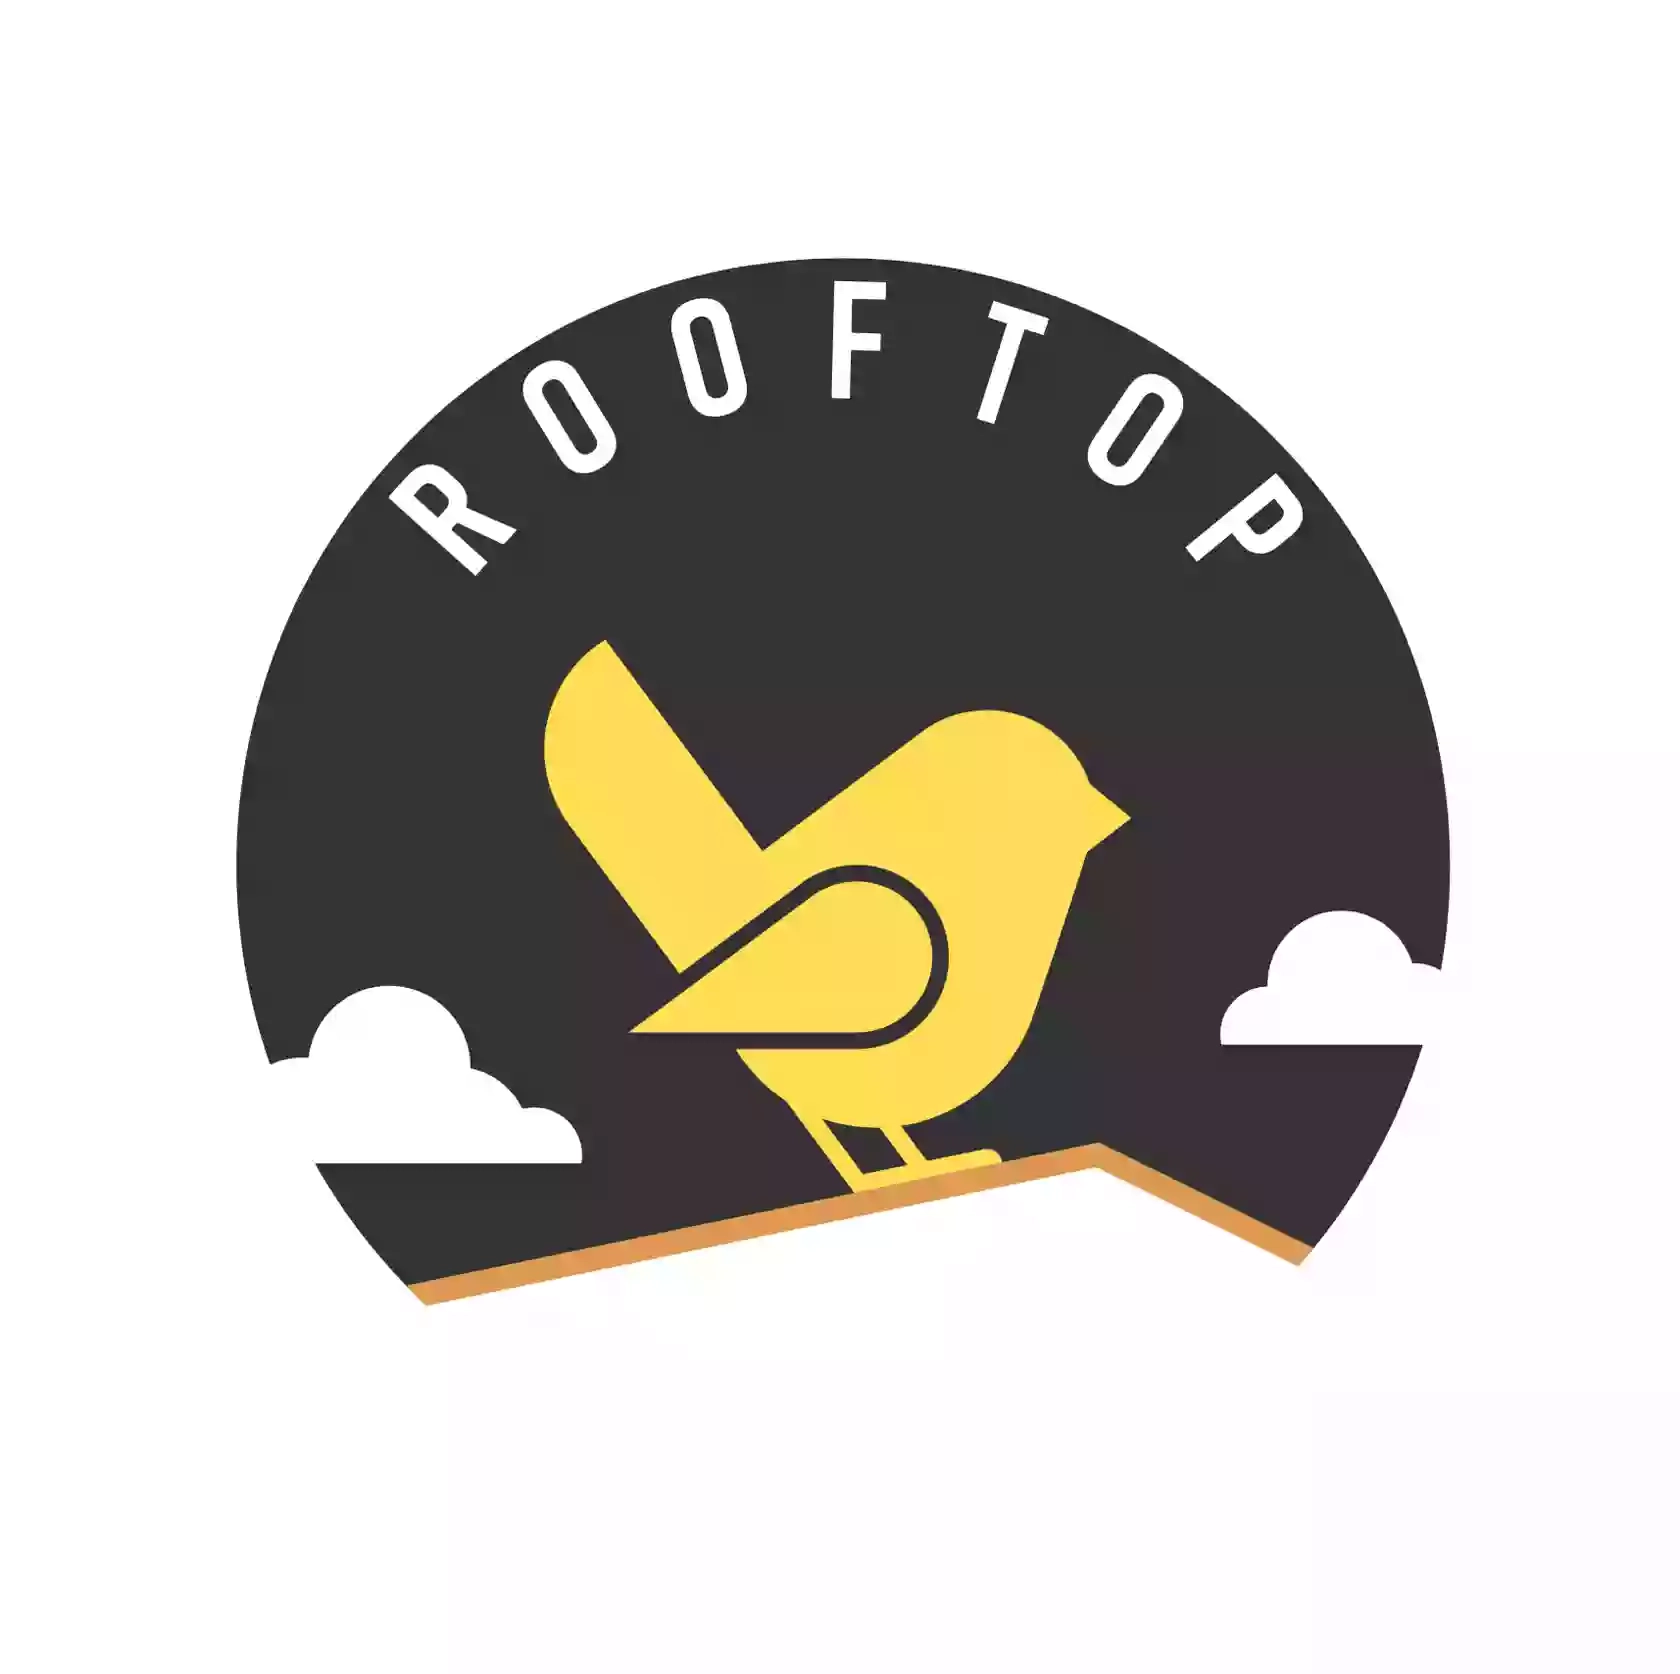 Rooftop-2021